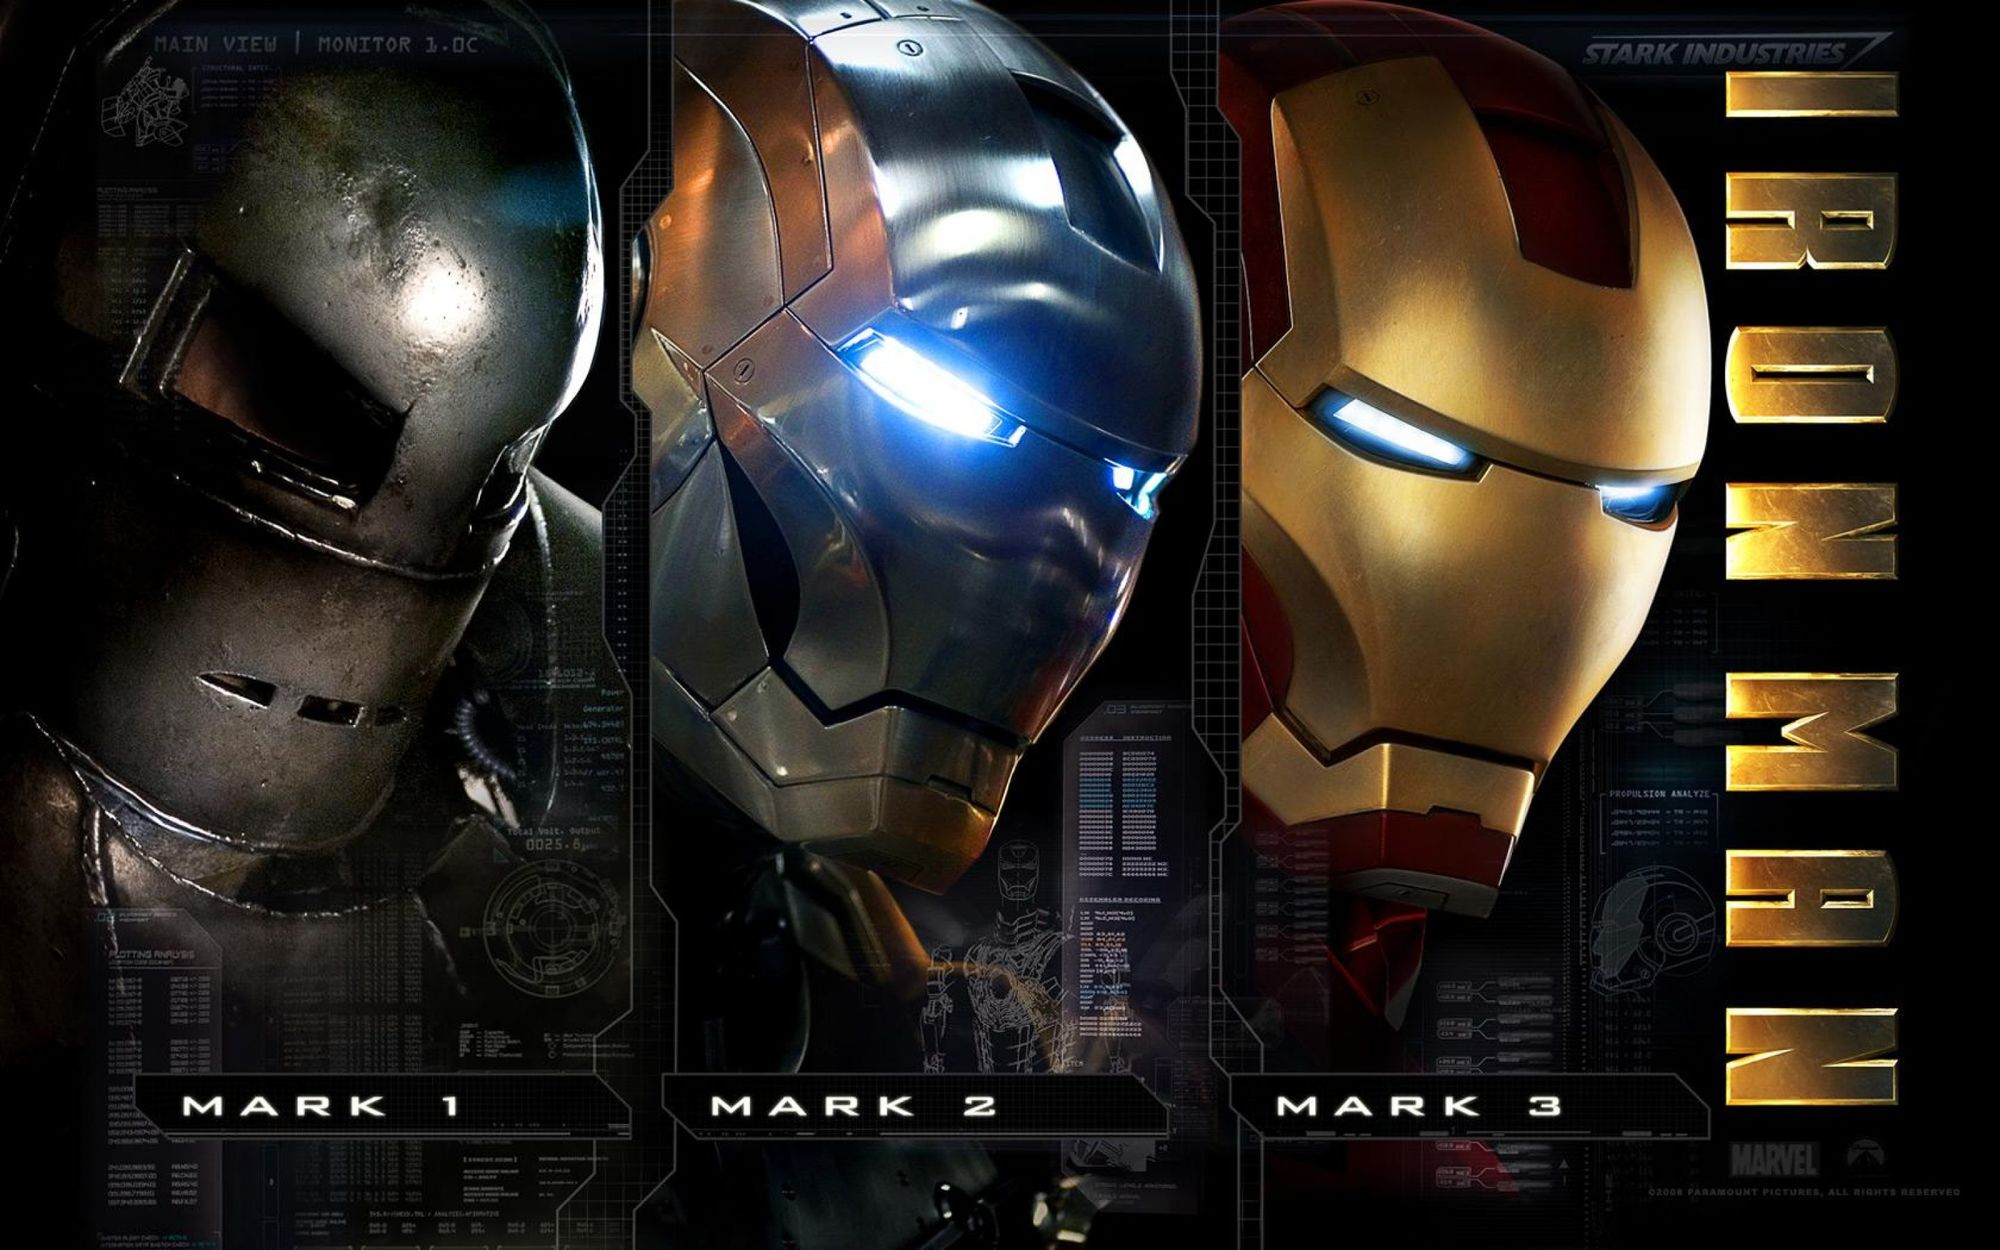 Mark 1, Mark 2 and Mark 3 Iron Man Helmets